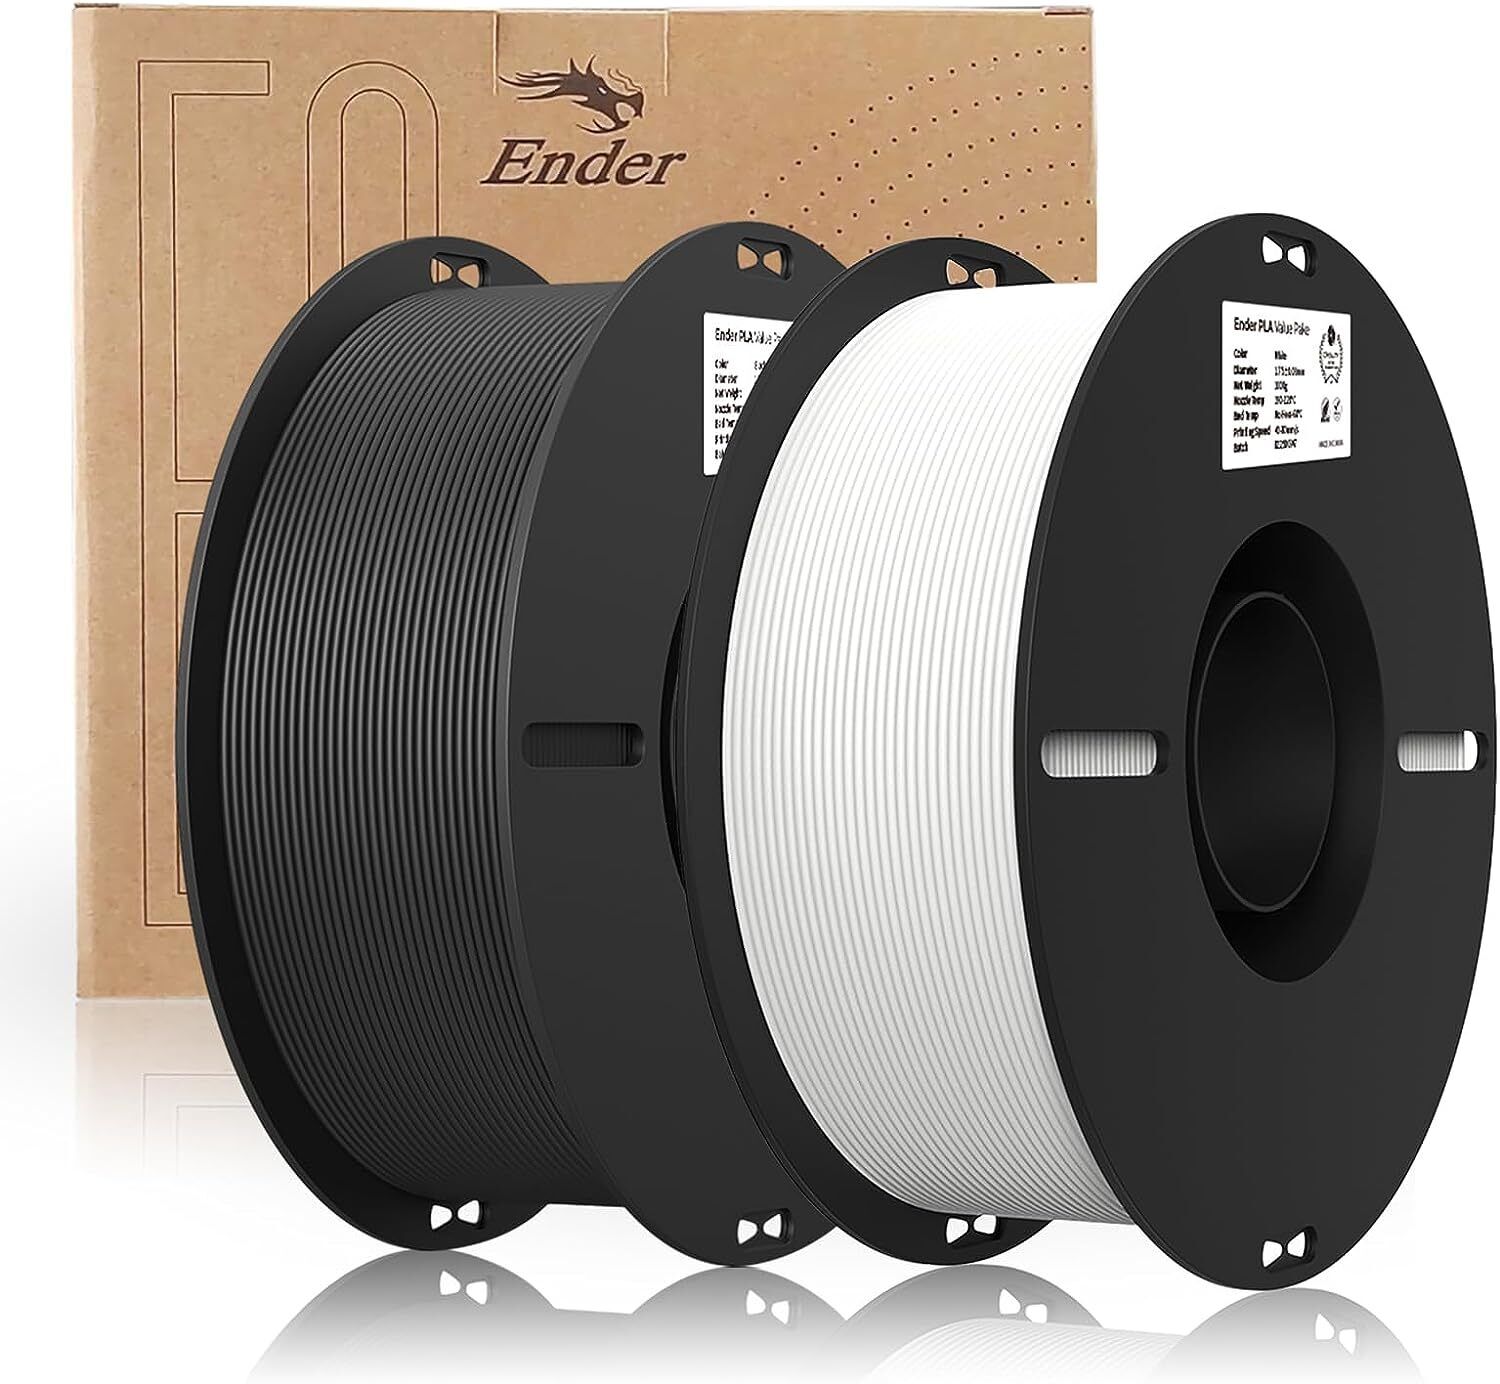 2pcs Creality 3D Printer Filament, Ender PLA Filament 1.75mm 2Kg for 3D Printing